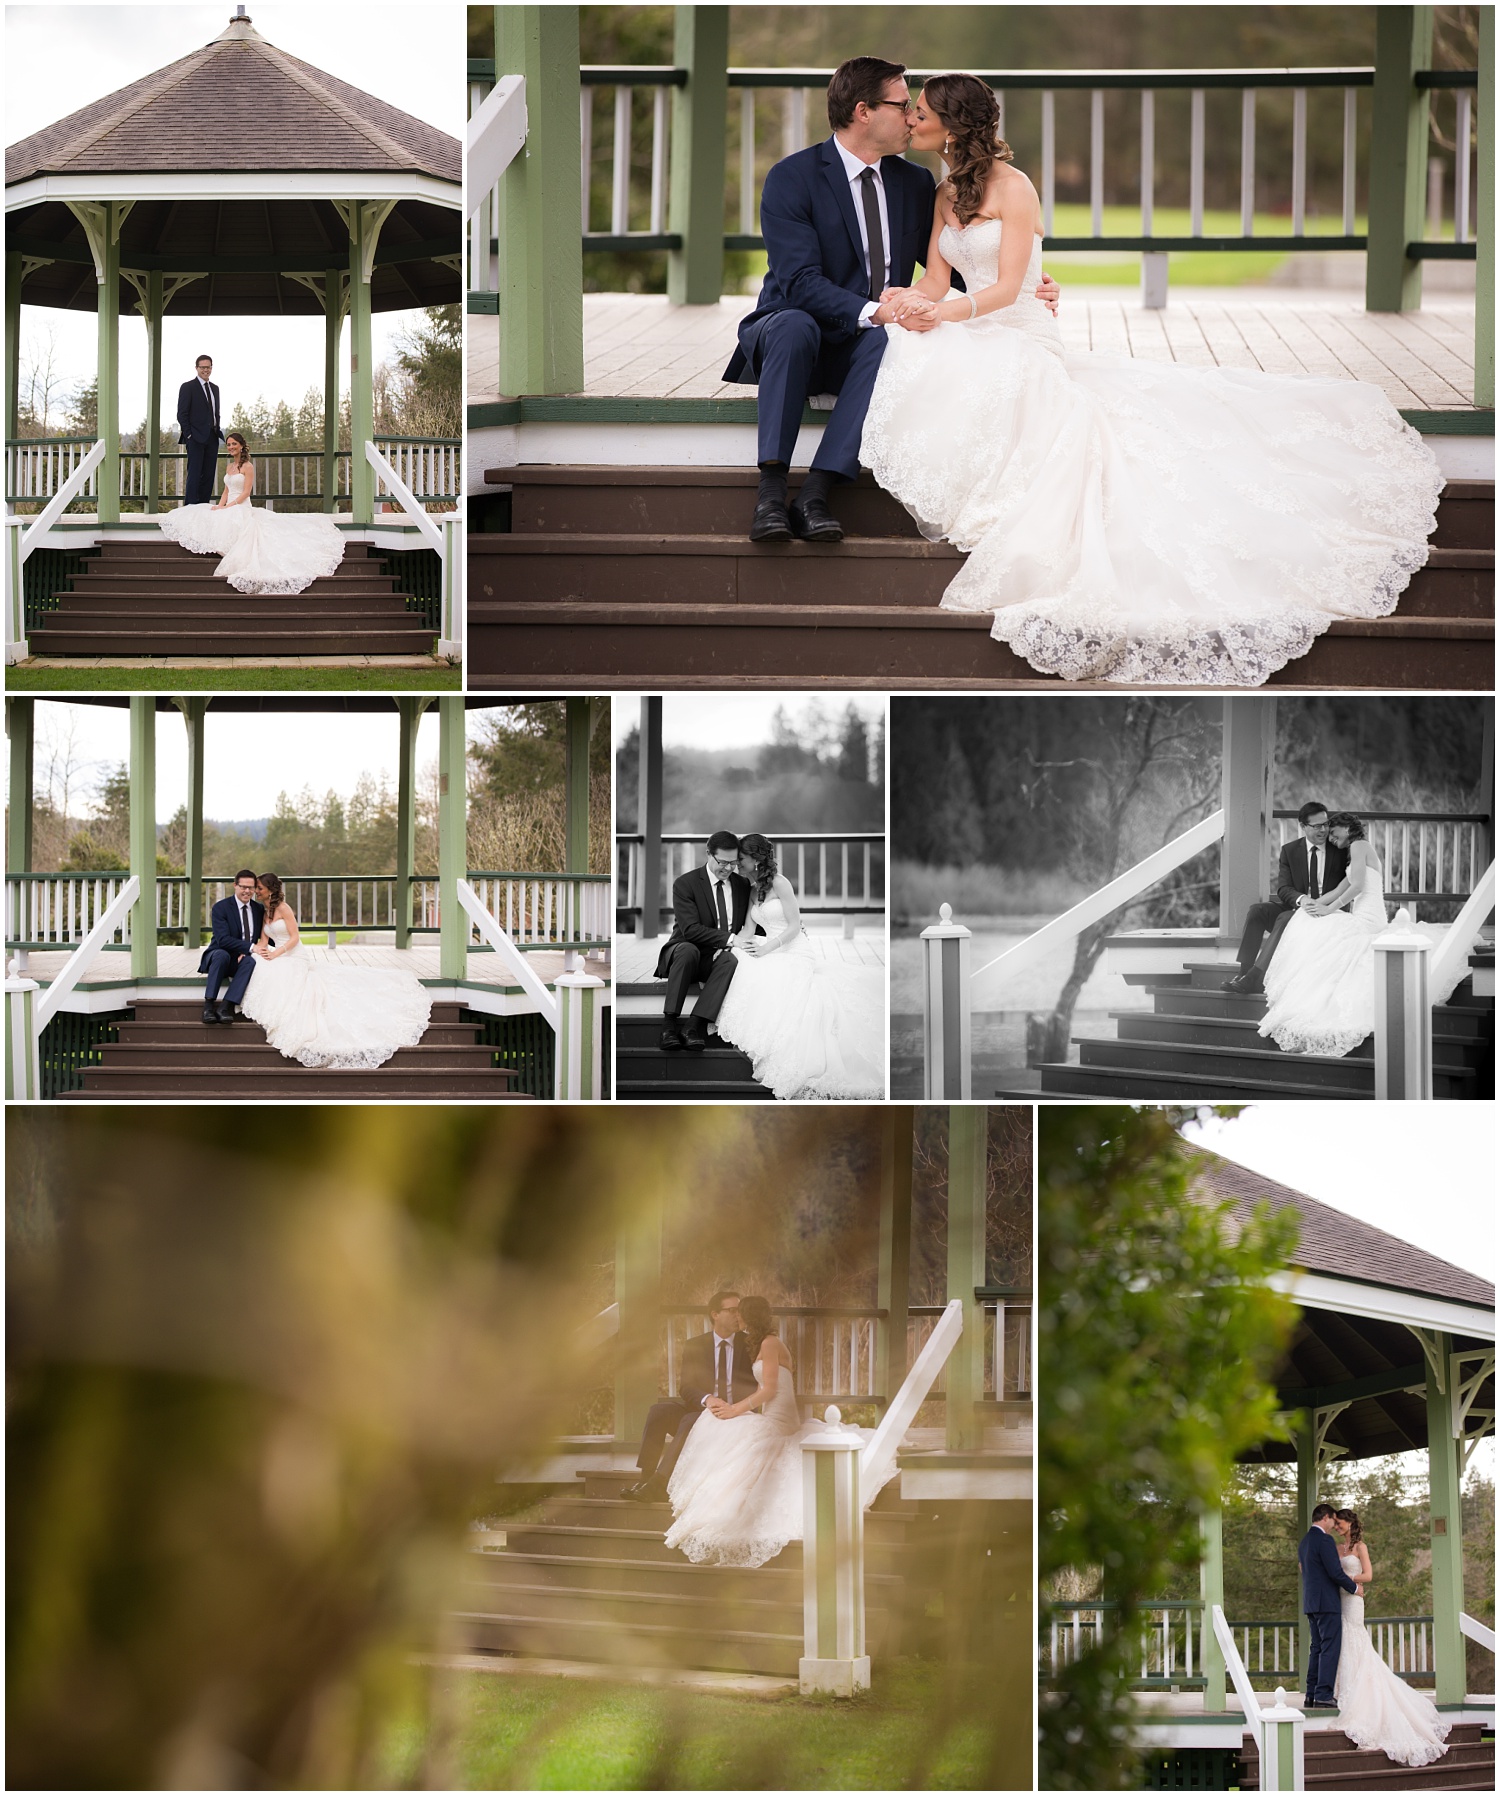 Amazing Day Photography - Mission Wedding Photographer - Hayward Lake Bridal Session - Langley Wedding Photographer (6).jpg